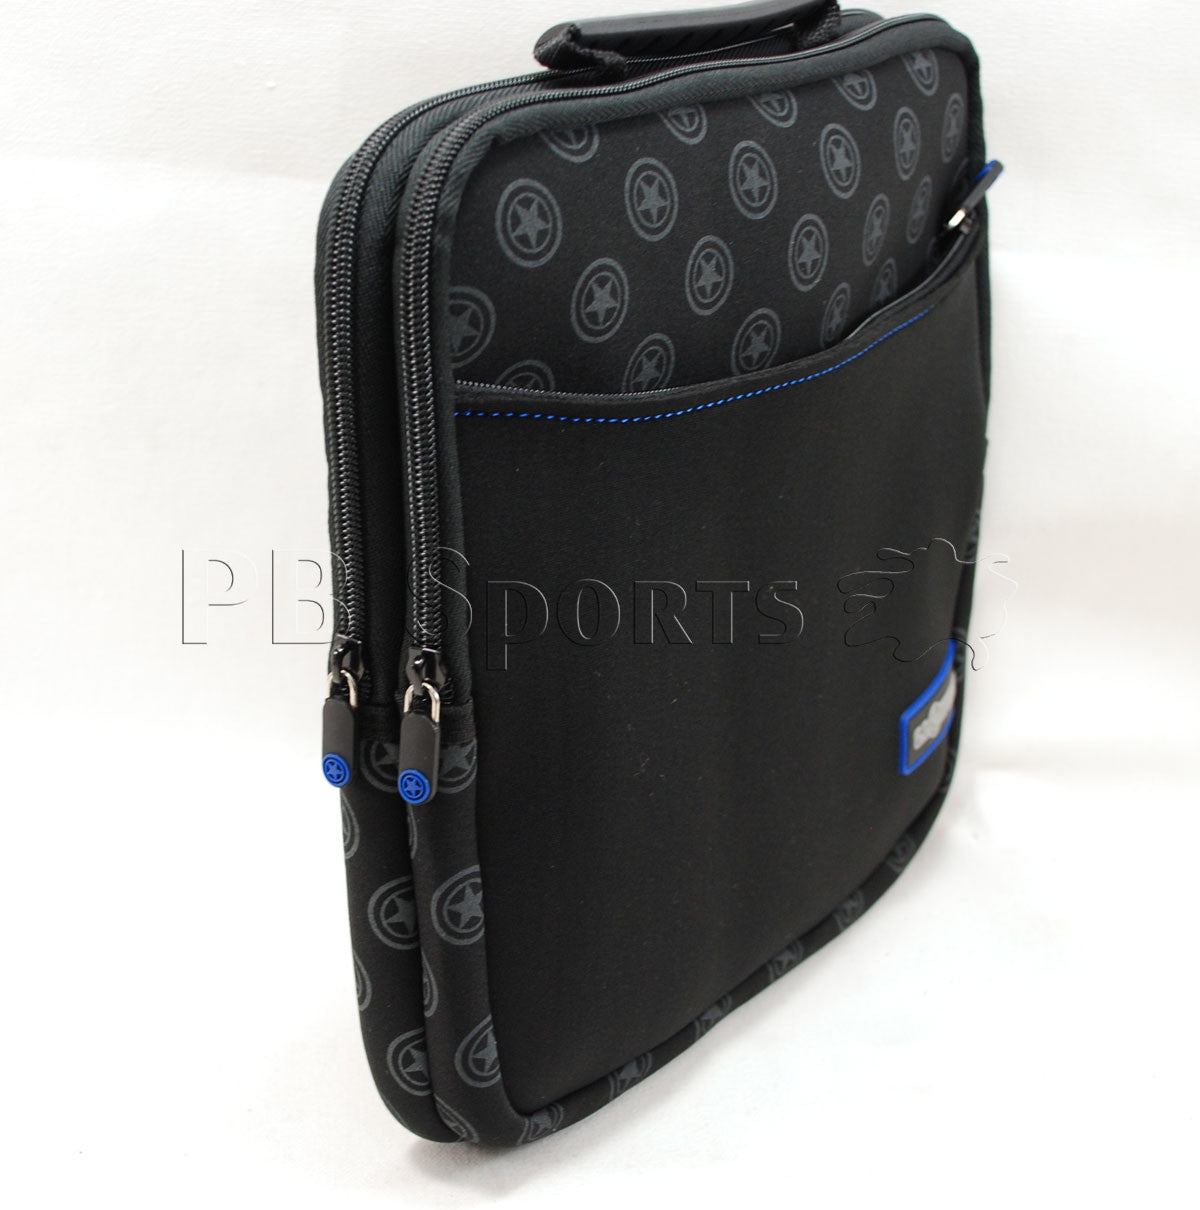 GI Sportz Marker Bag - Black/Blue - G.I. Sportz